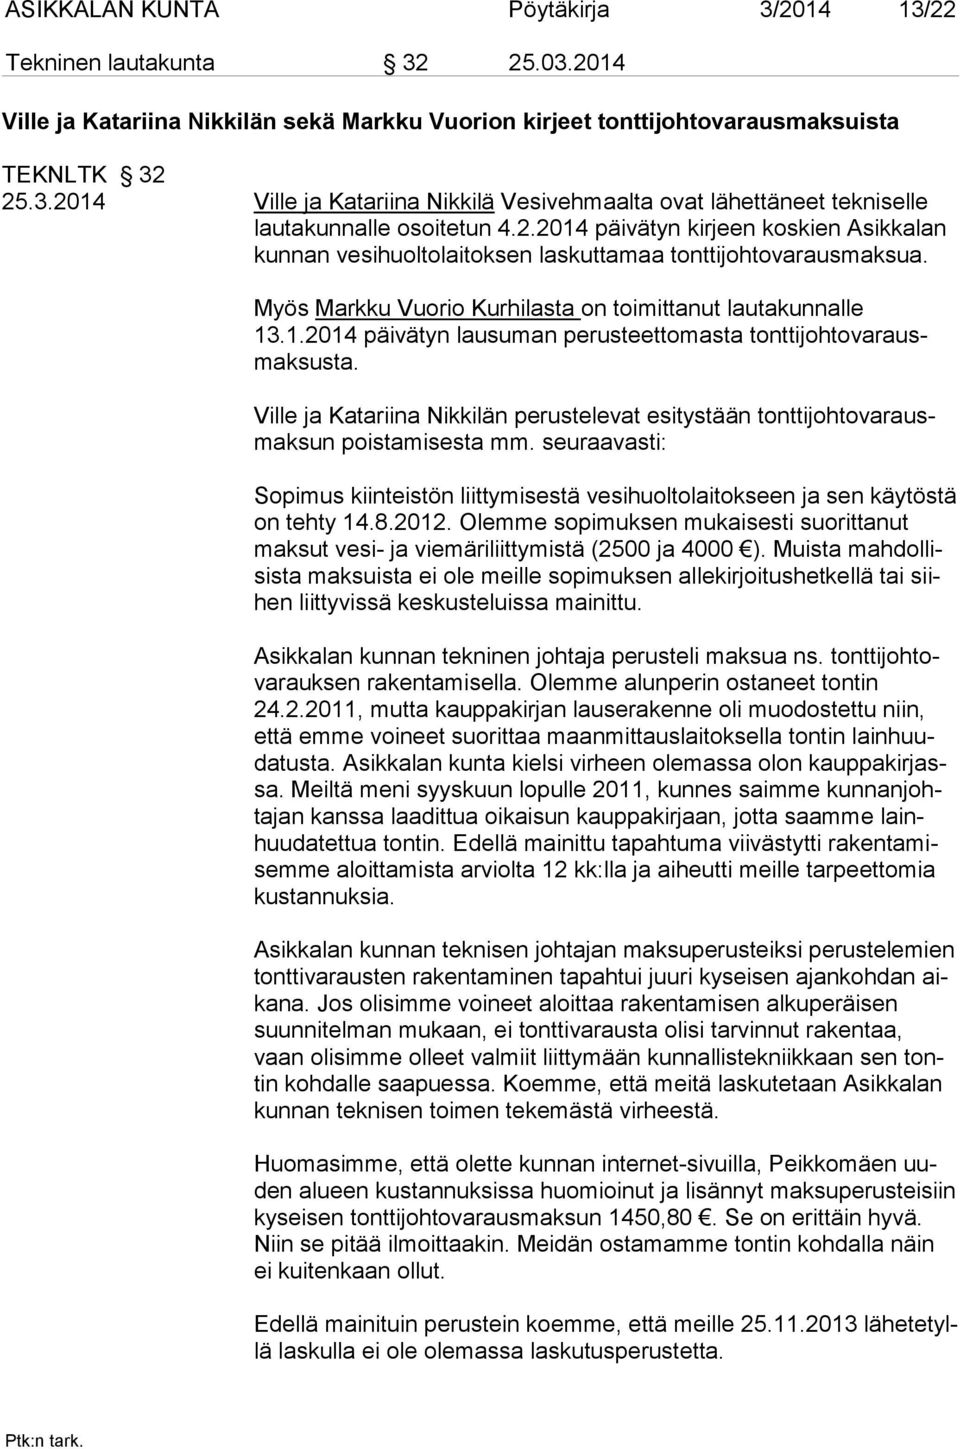 Ville ja Katariina Nikkilän perustelevat esitystään tonttijohtovarausmaksun poistamisesta mm. seuraavasti: Sopimus kiinteistön liittymisestä vesihuoltolaitokseen ja sen käytöstä on tehty 14.8.2012.